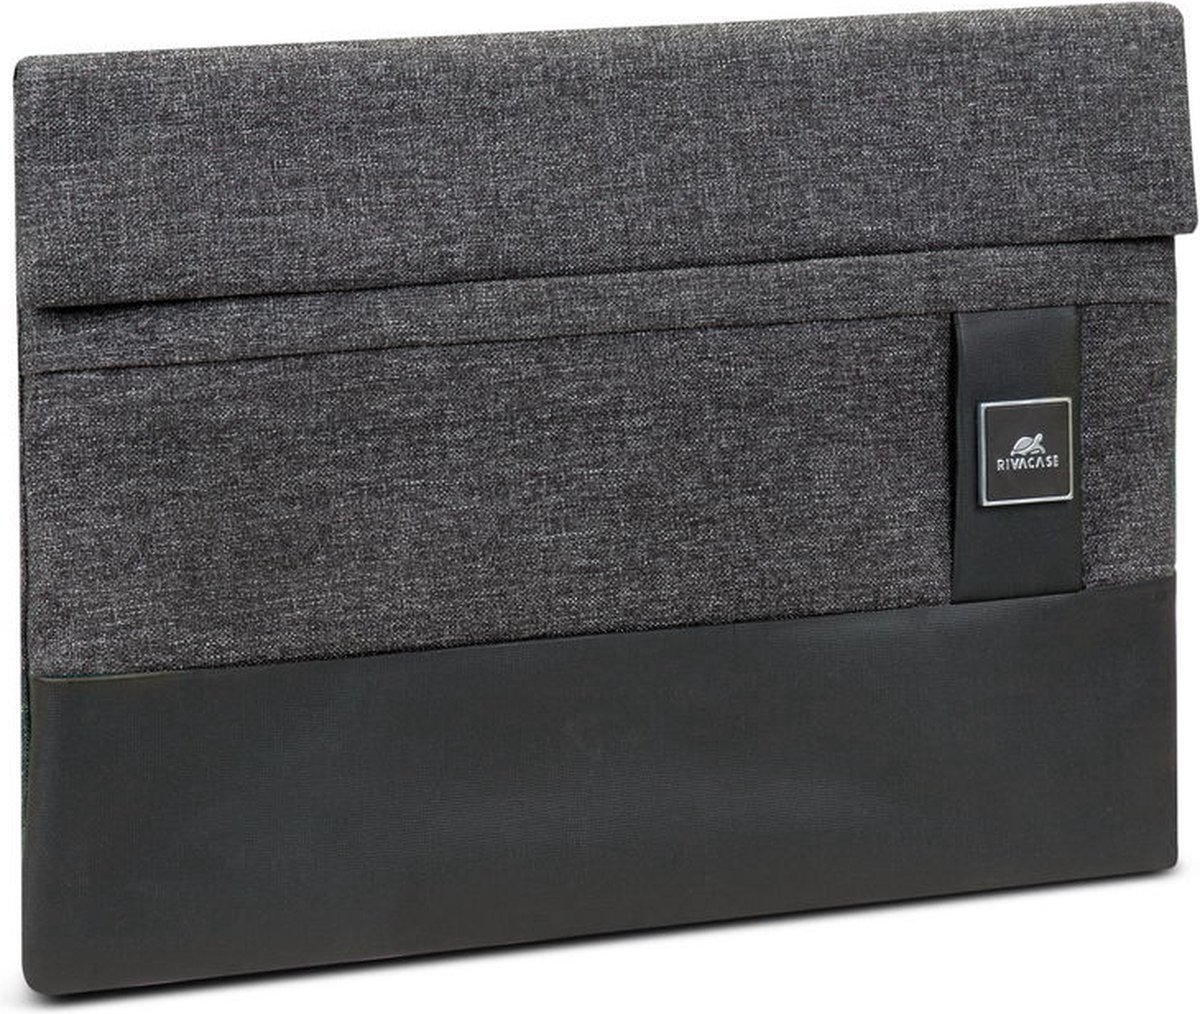 RIVACASE 8802 black MacBook Pro/Air 13 sleeve